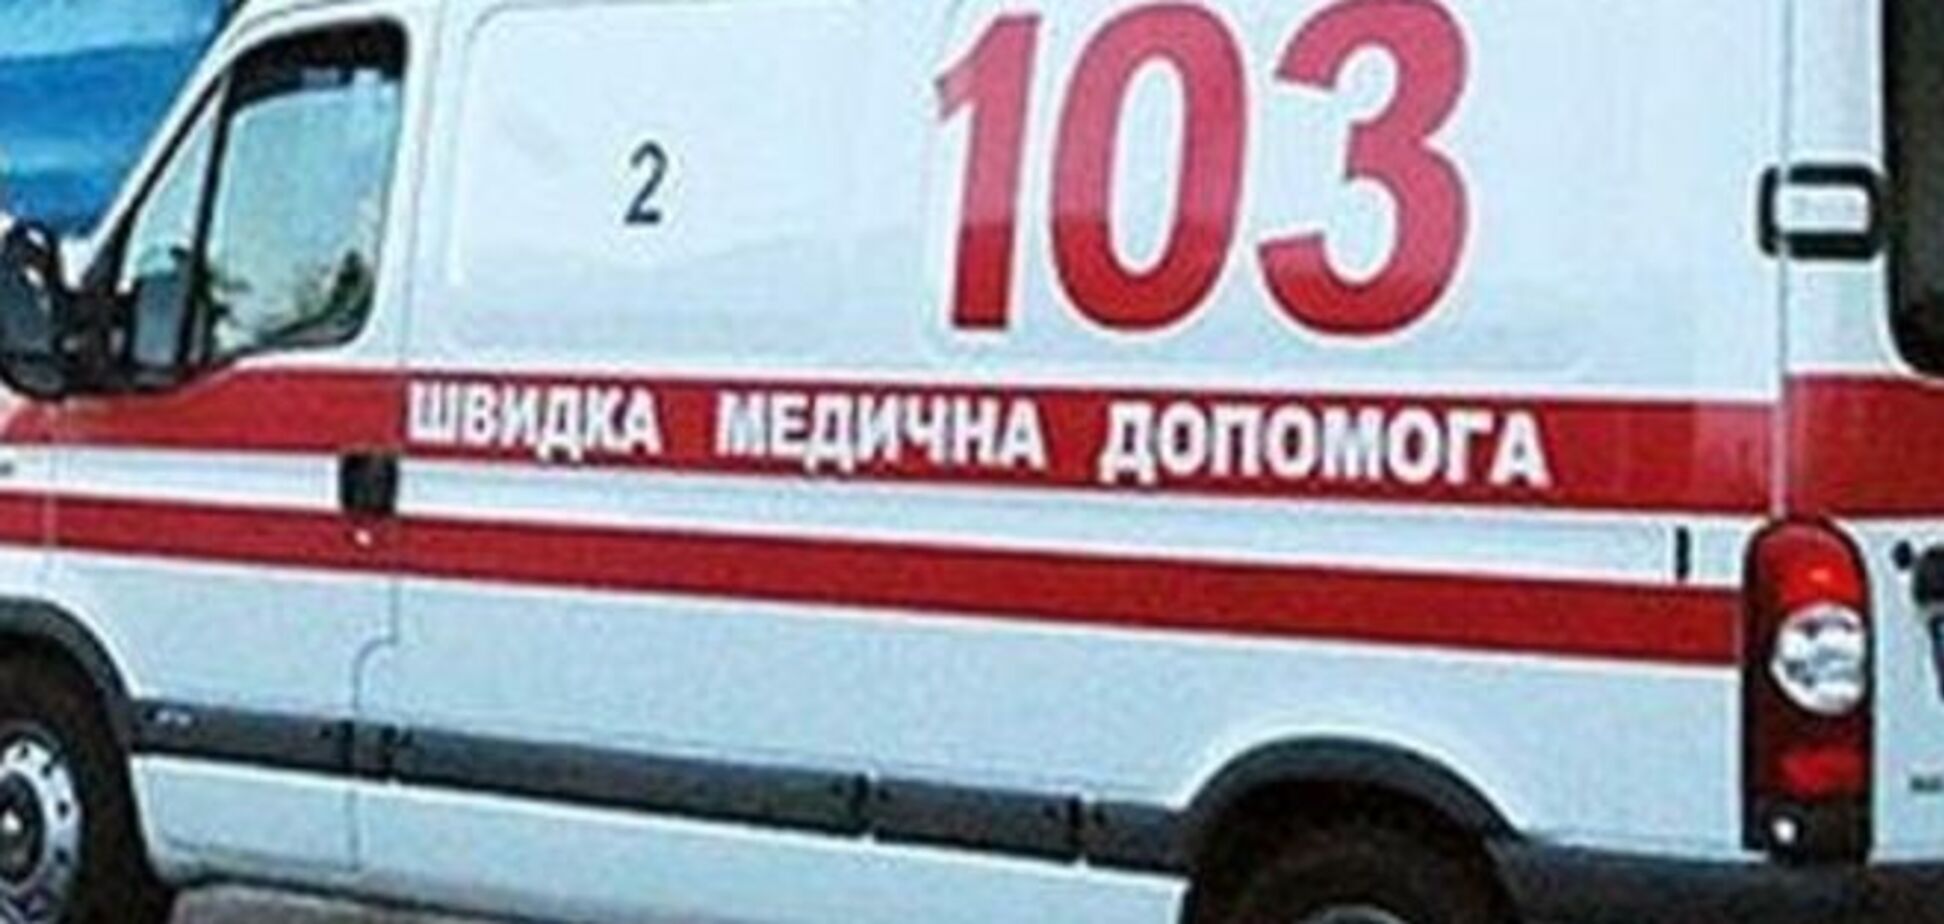 У Києві автомобіль збив дитину